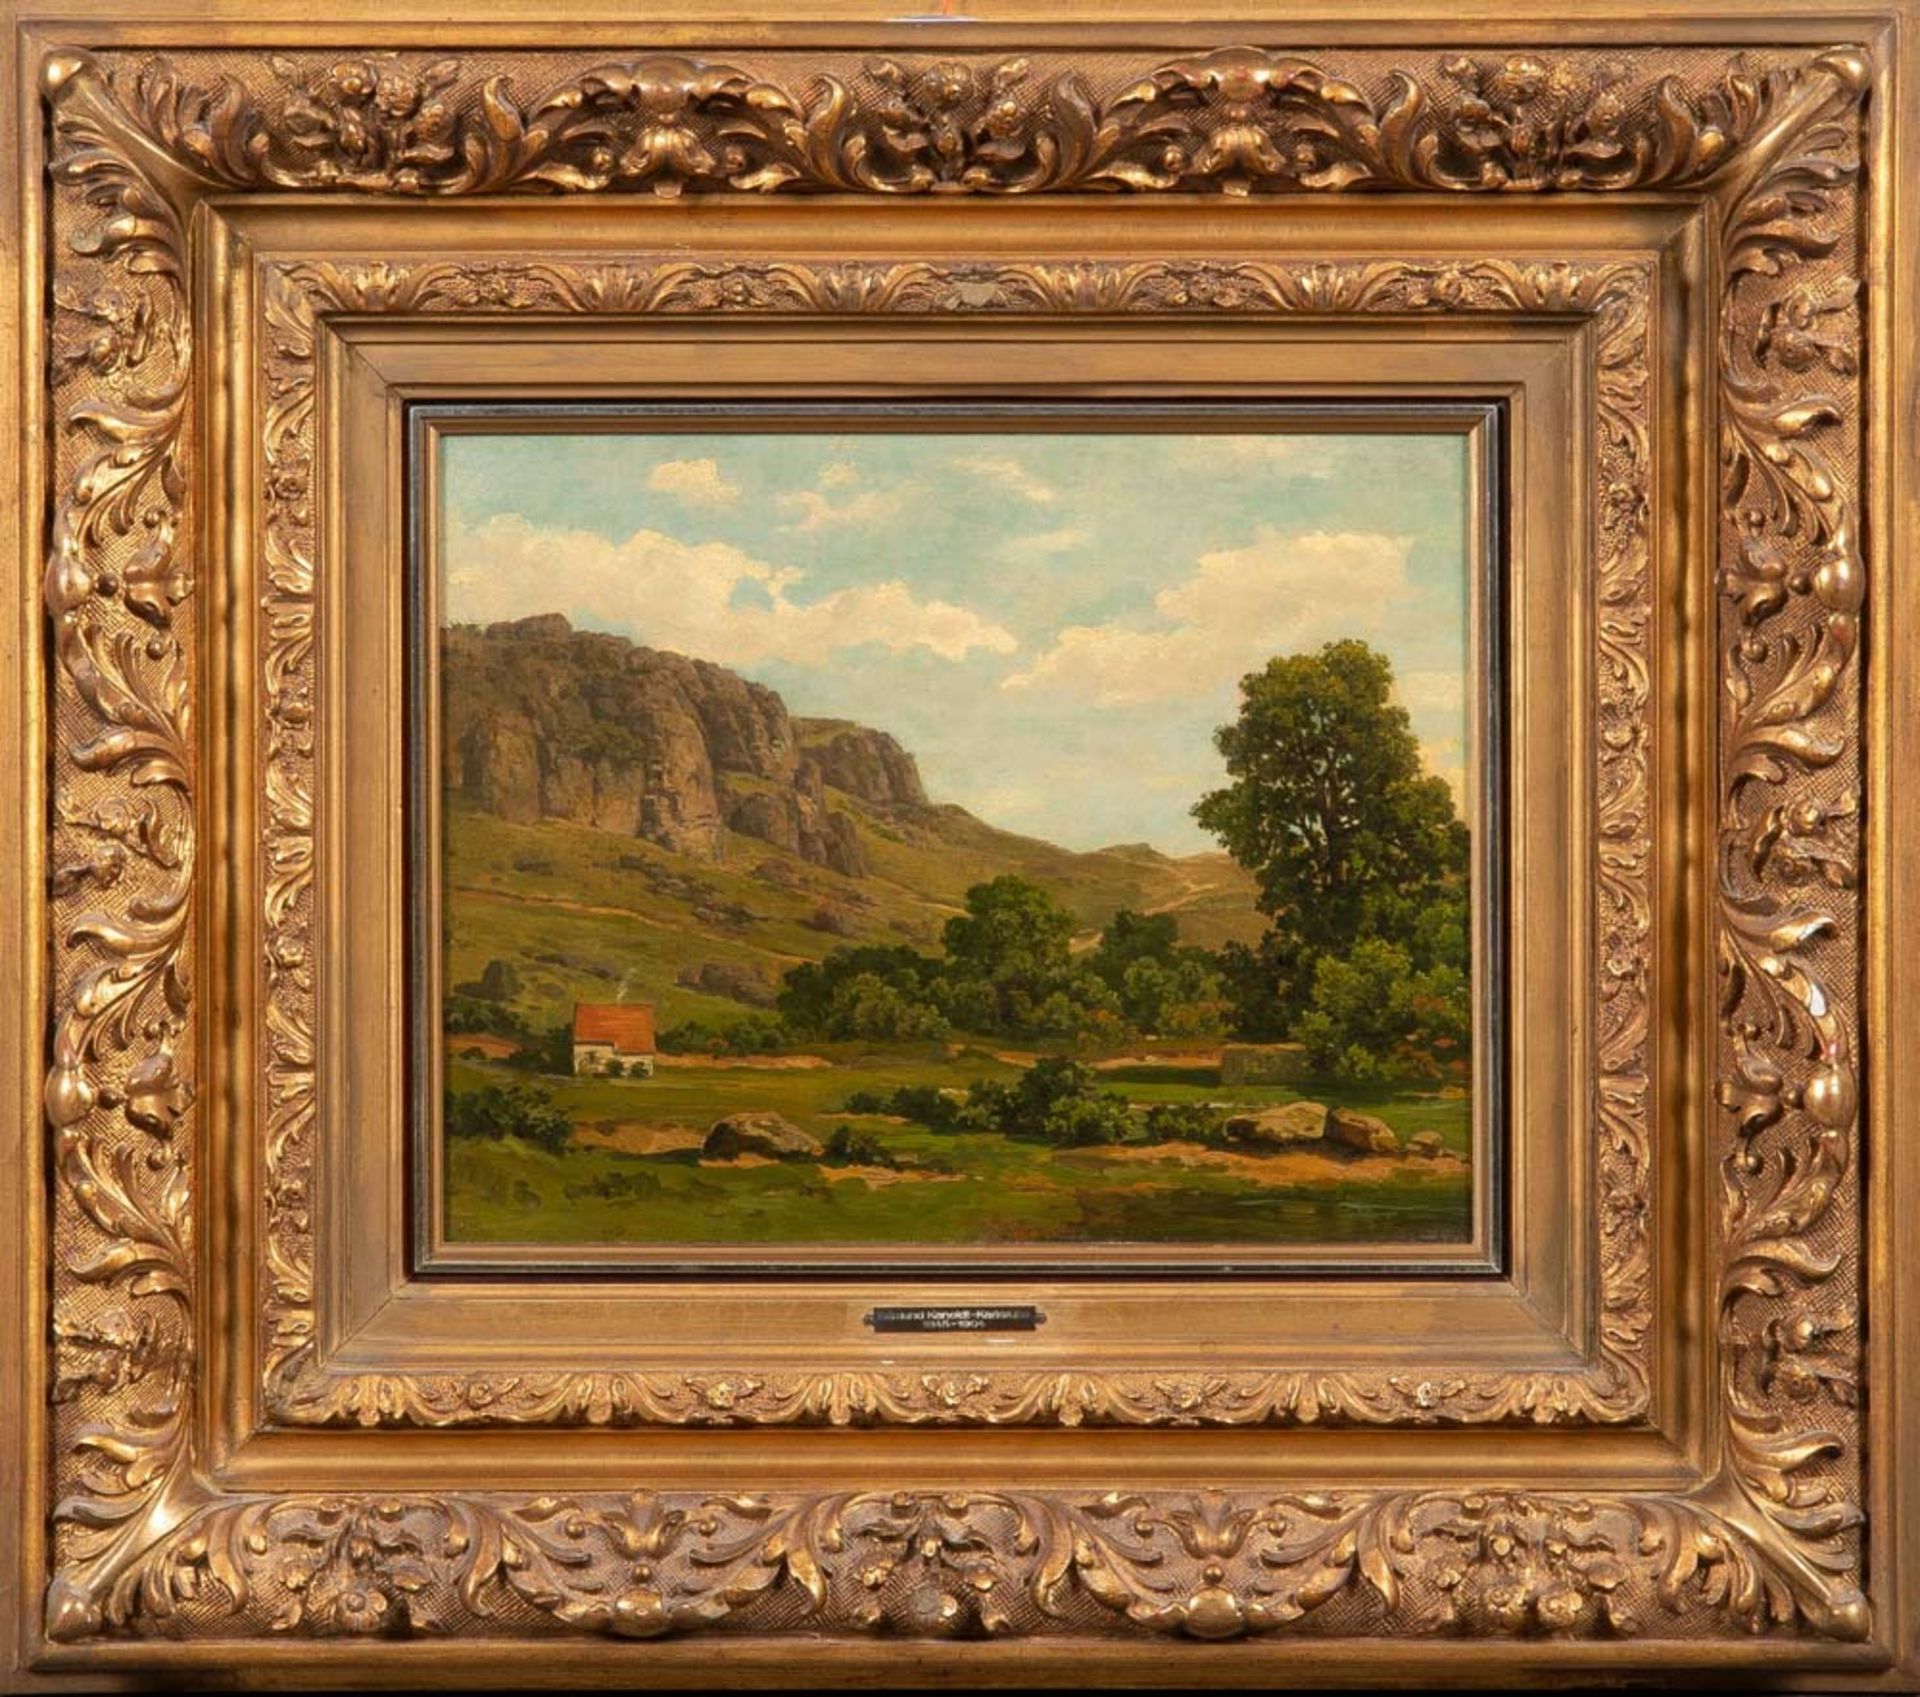 Edmundt Kanoldt (1845-1904) attrib. Landschaft mit Gebäude und Gebirge. Öl/Holz, gerahmt, 28,5 x